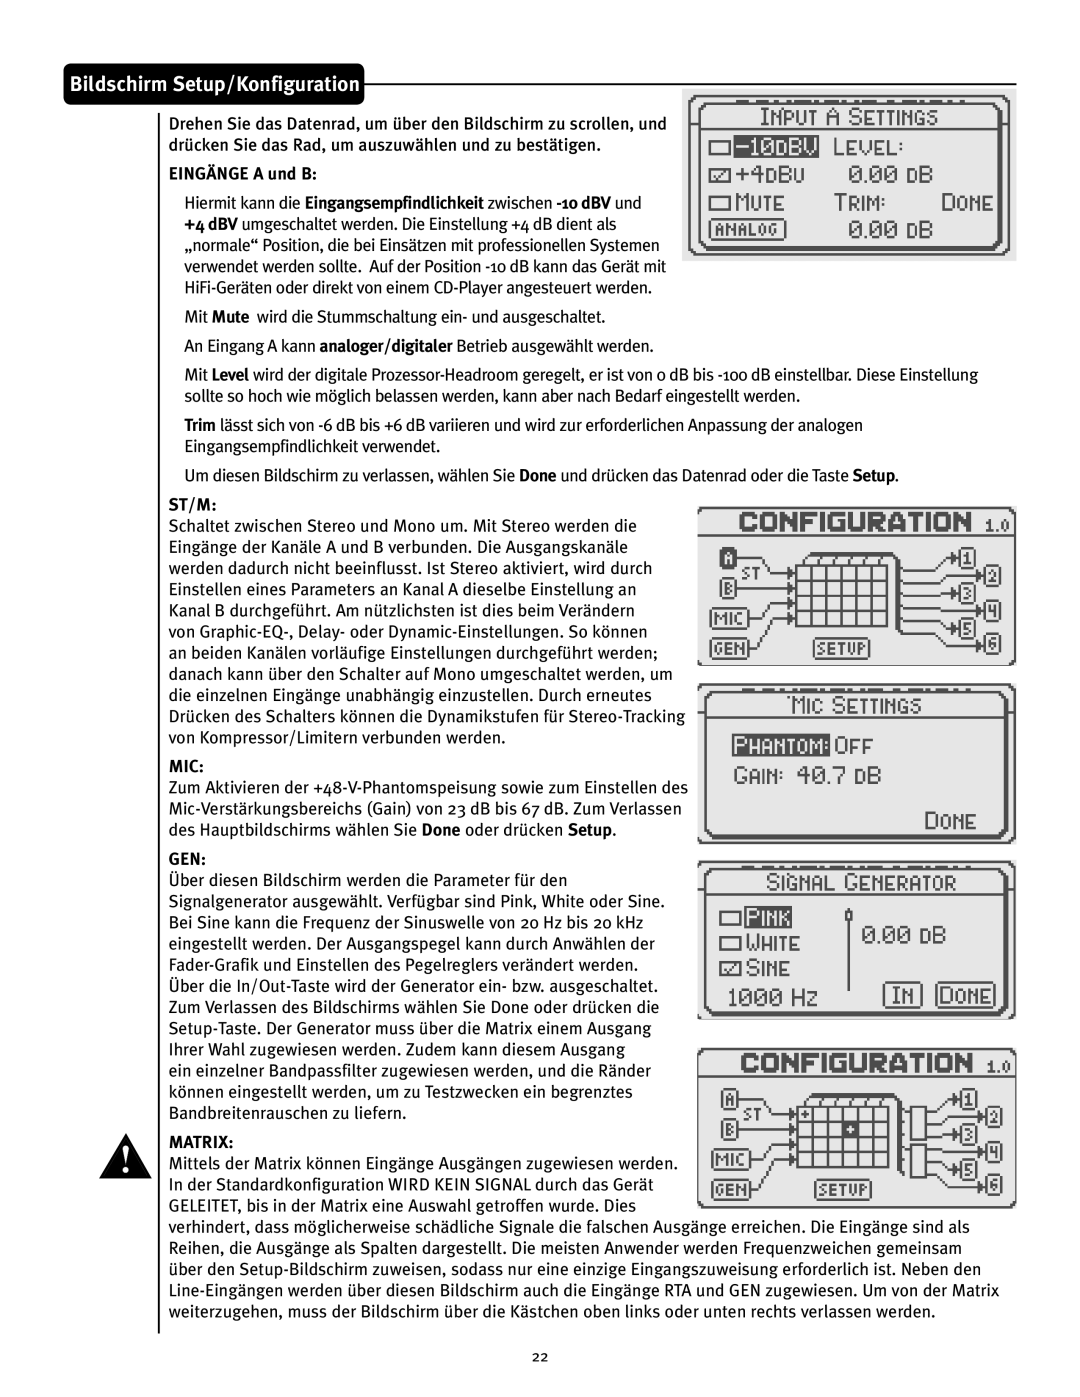 Peavey VSX 26 manual Bildschirm Setup/Konfiguration, EINGÄNGE A und B, St/M, Matrix 